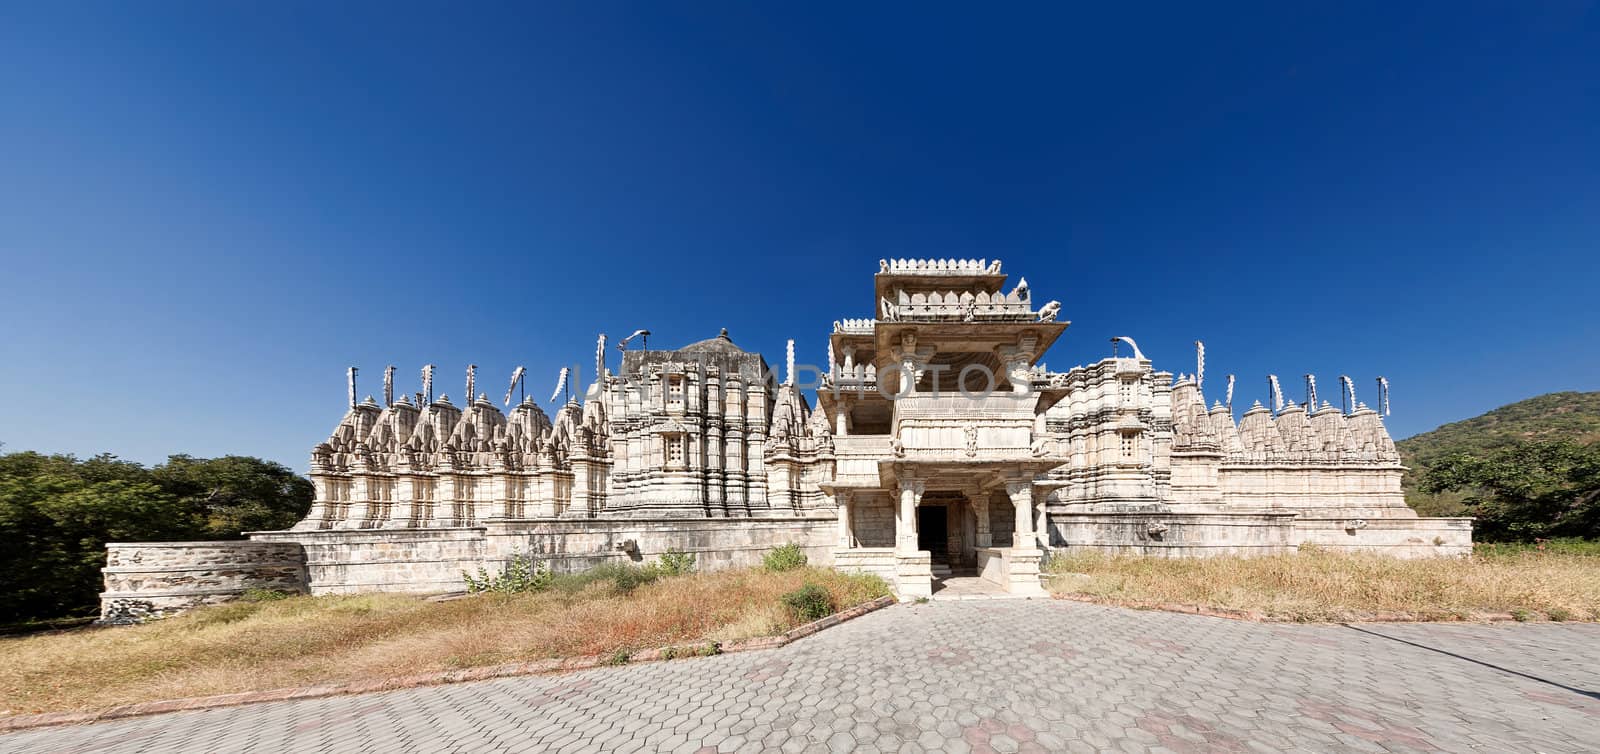 Jain Temple in Ranakpur,India by vladimir_sklyarov